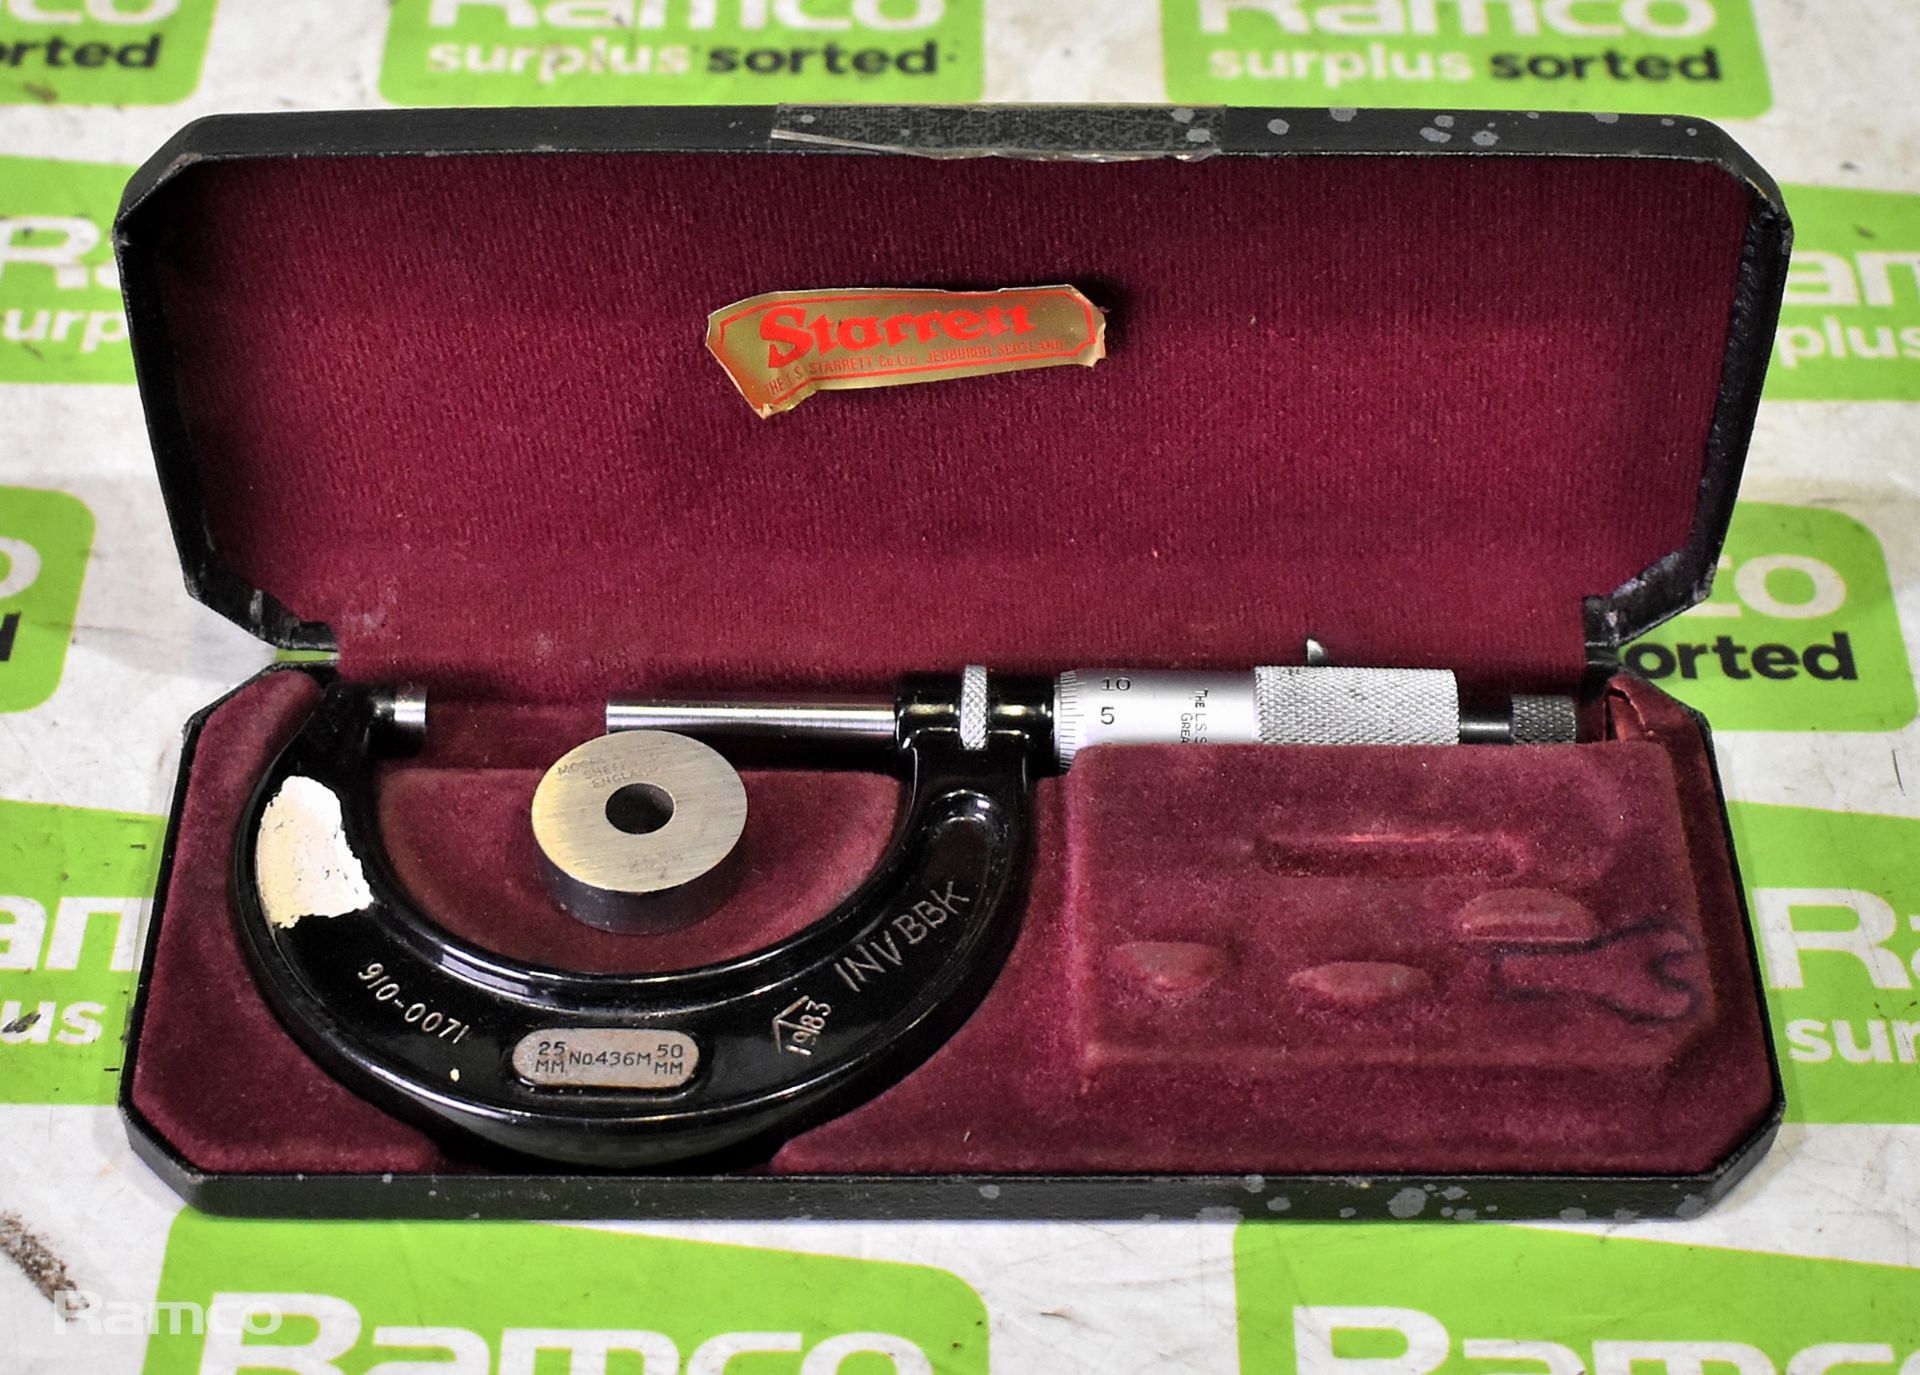 Starrett No 436 25-50mm micrometer caliper with case (incomplete)